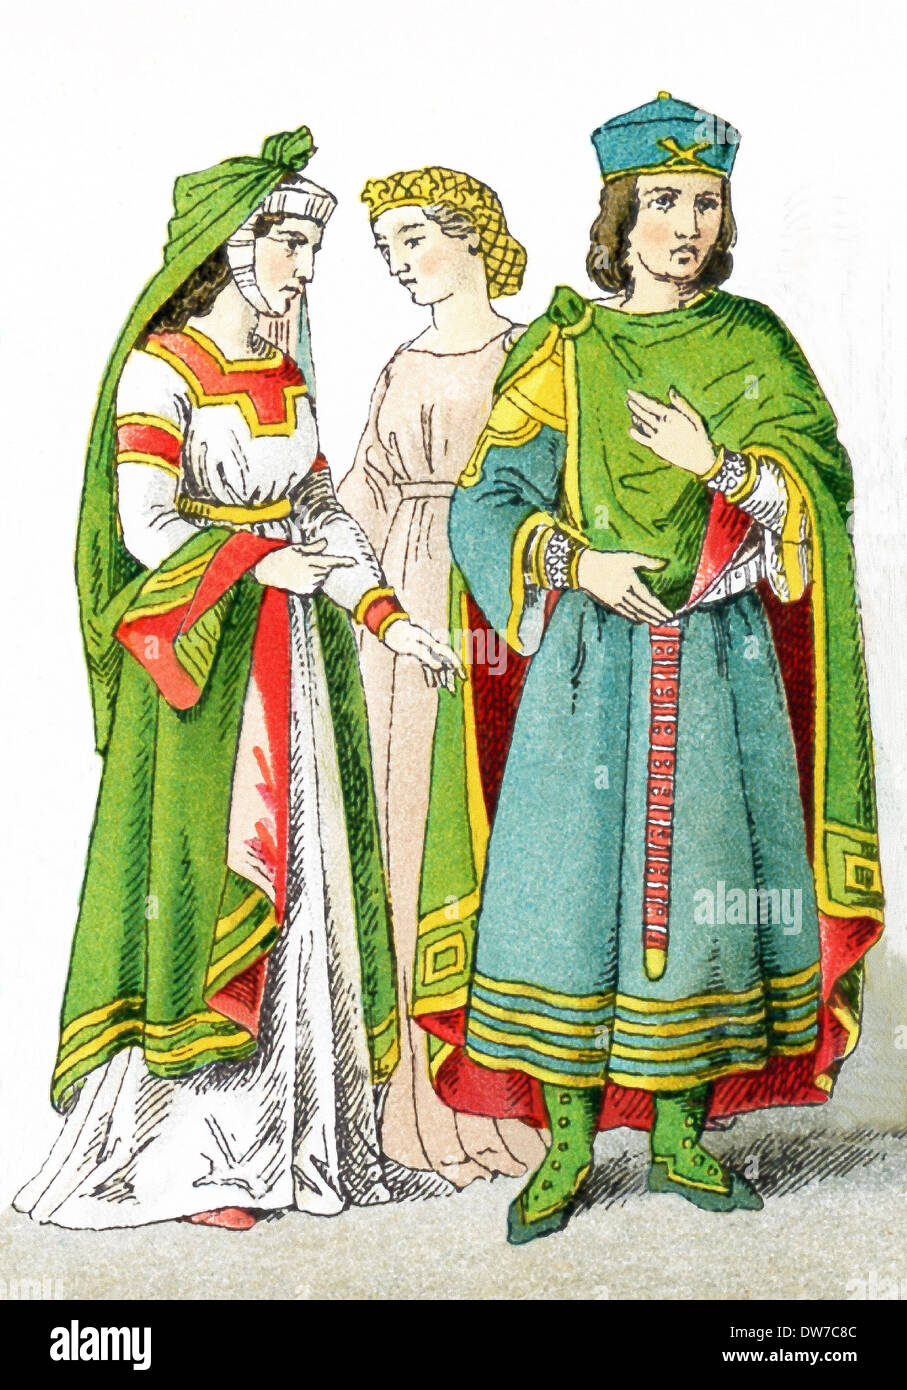 Le figure raffigurate qui rappresentano tre nobili veneziani, da Venezia, Italia, circa A.D. 1200. L'illustrazione risale al 1882. Foto Stock